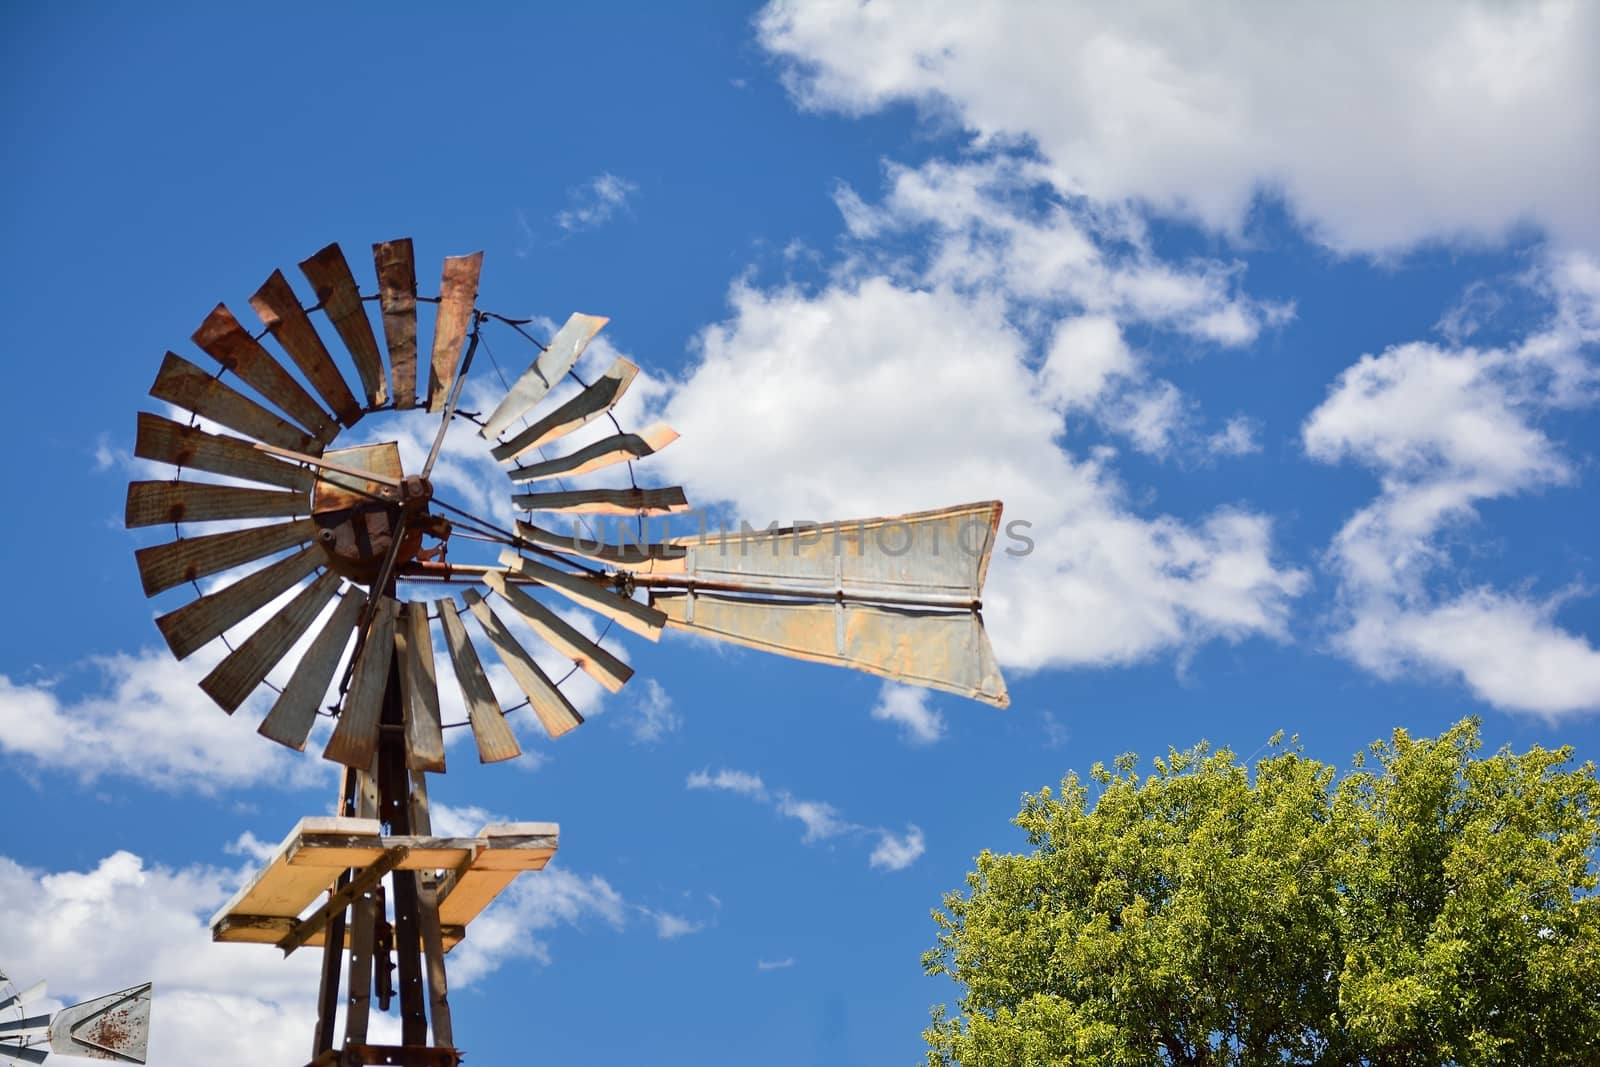 Windmill on an agricultural farm in Oklahoma, USA.